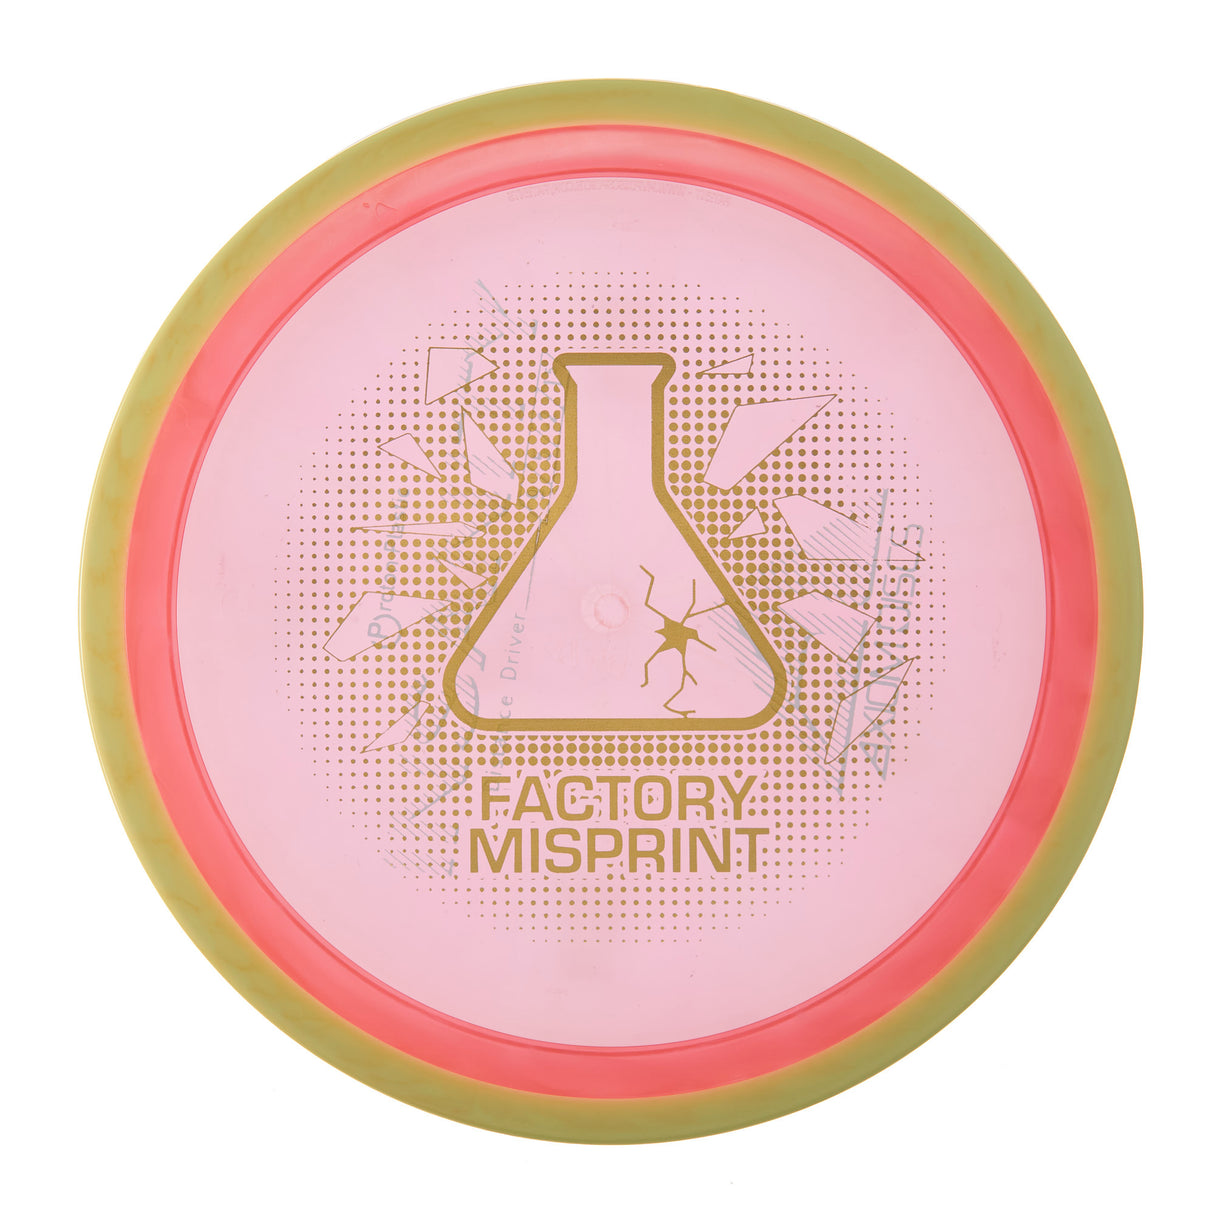 Axiom Insanity - Factory Misprint Proton 174g | Style 0003